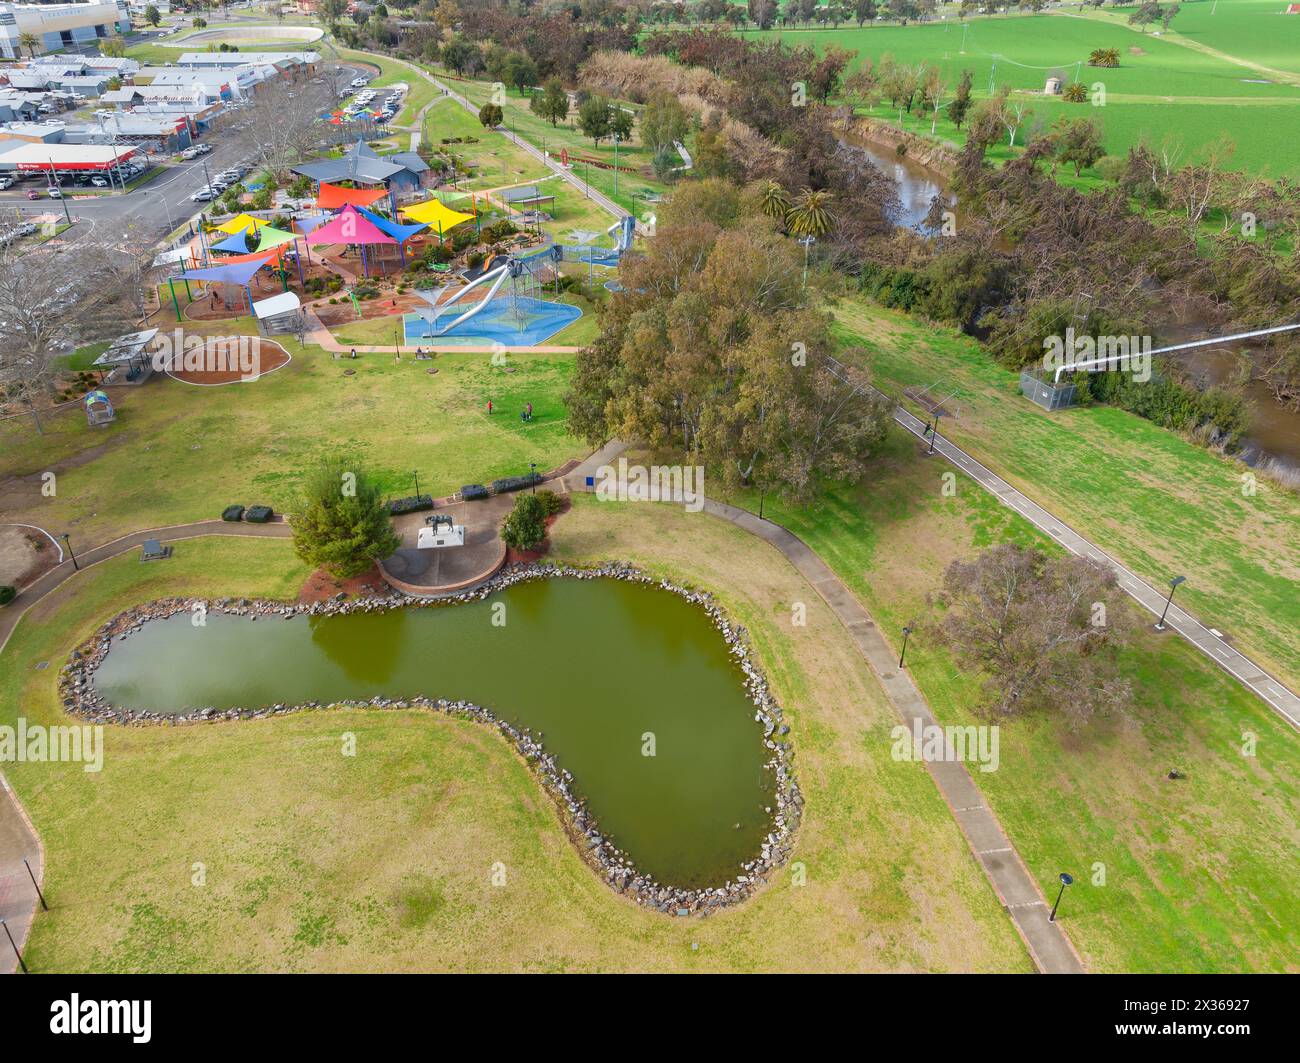 Veduta aerea di un parco giochi e di un lago nel parco tra i terreni agricoli e una strada cittadina a Tamworth nel nuovo Galles del Sud, Australia. Foto Stock